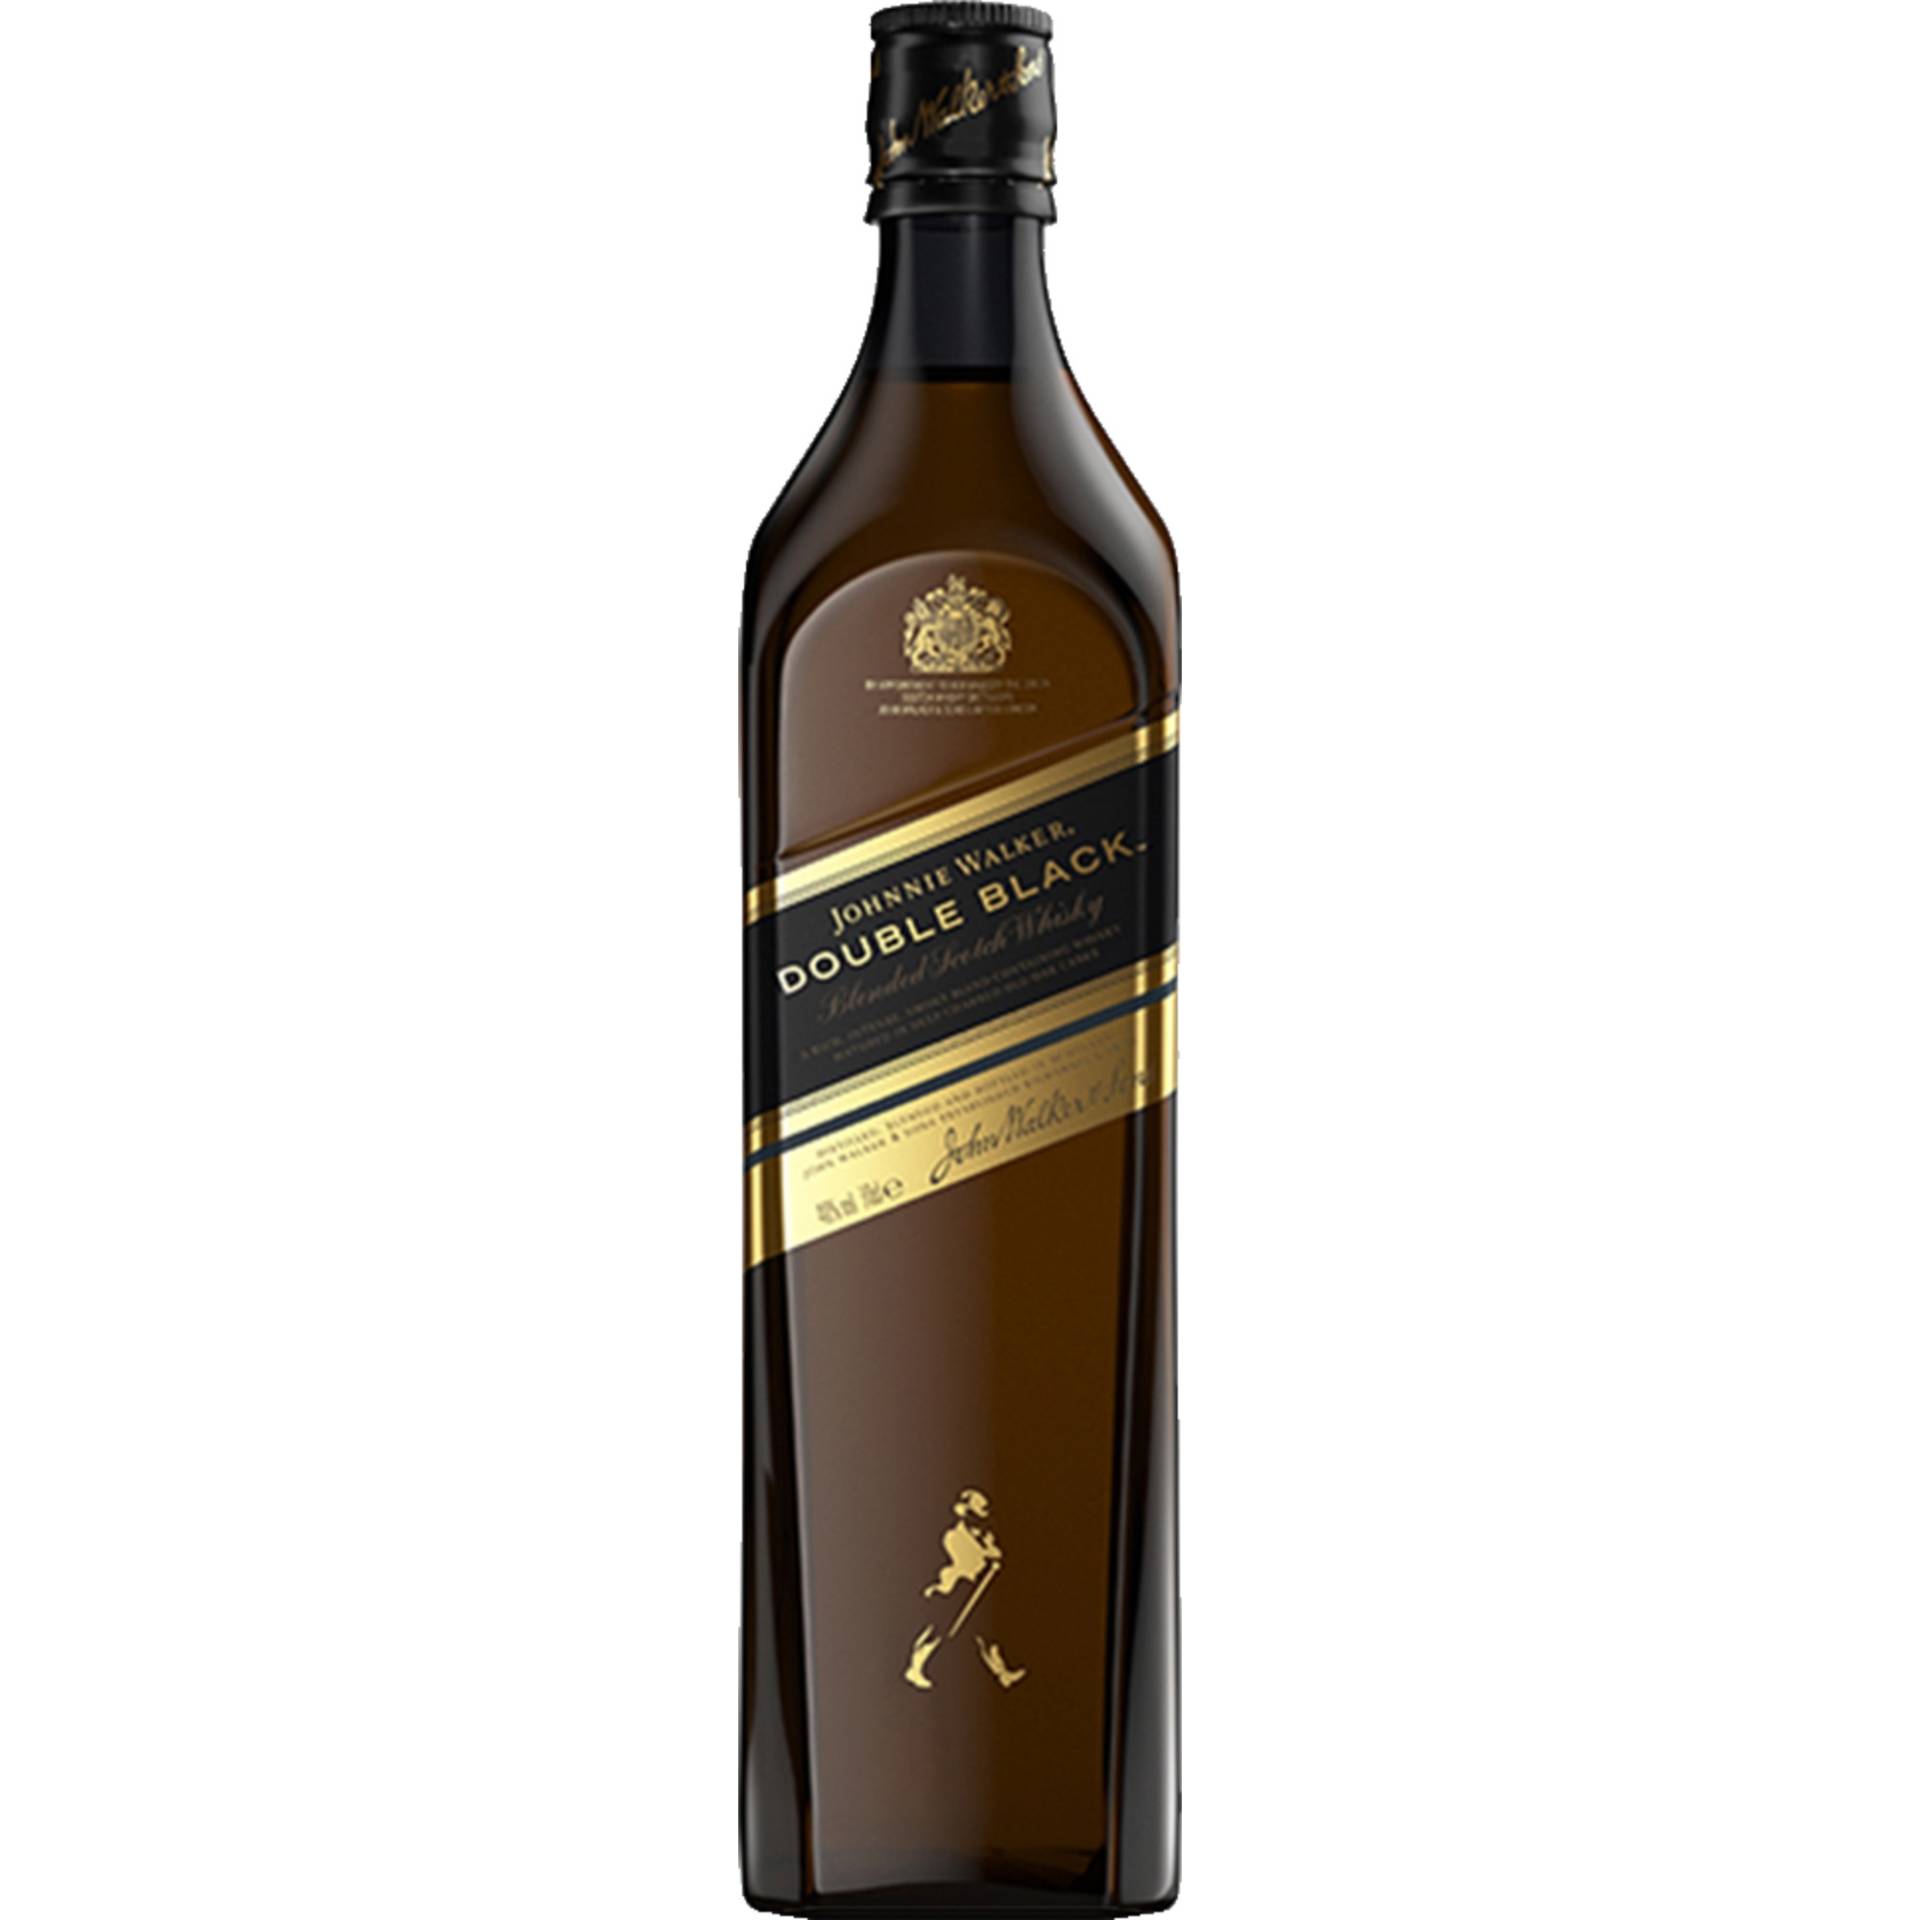 Johnnie Walker Double Black Blended Scotch Whisky, 0,7 L, 40% Vol., Schottland, Spirituosen von Johnnie Walker & Sons, 5 Lochside Way, Edinburgh, EH12 9DT, Scotland